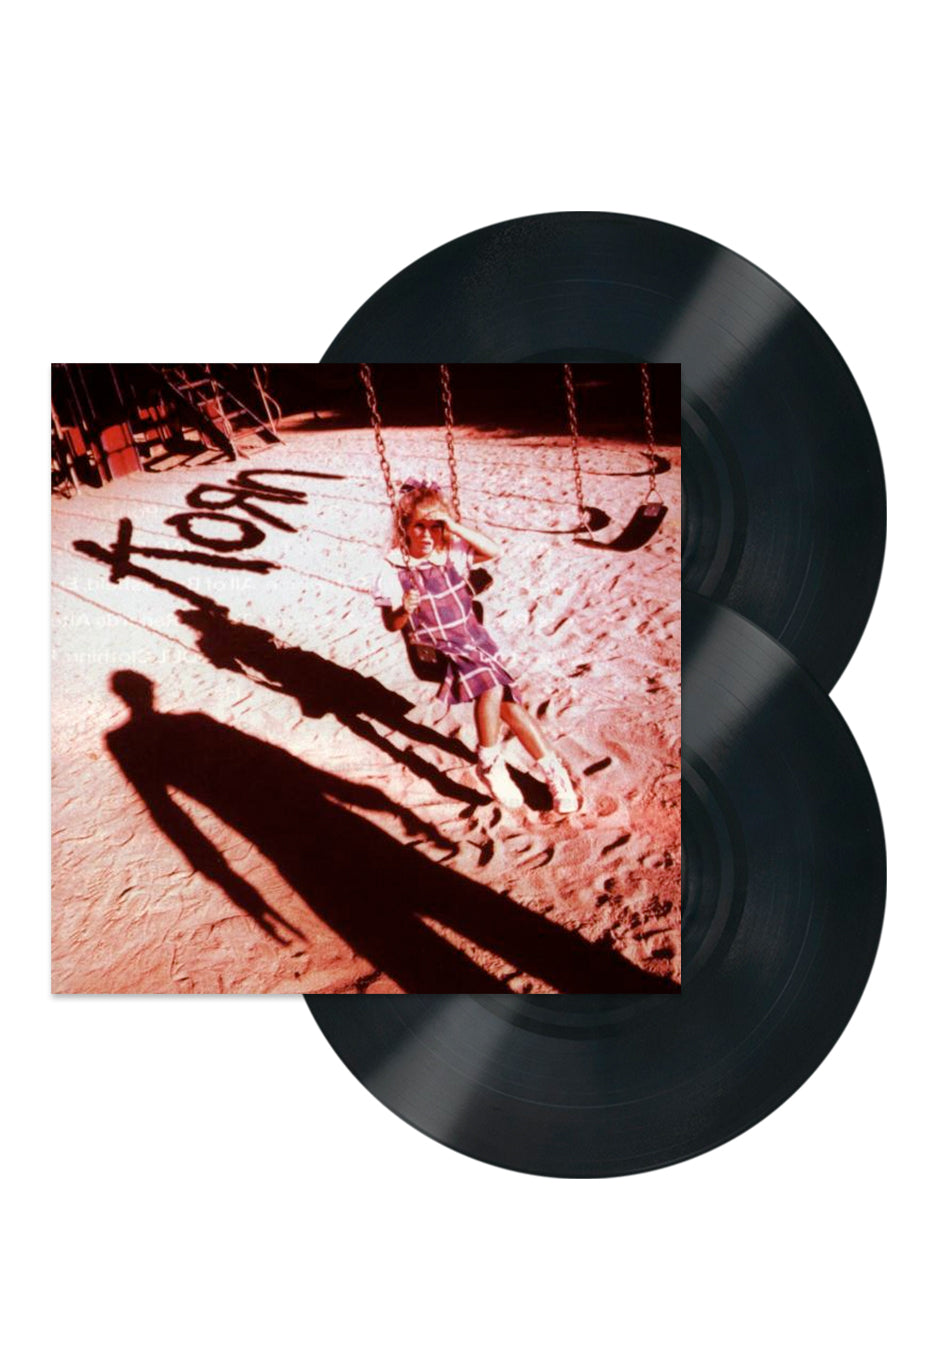 Korn - Korn "Reissue" (180g Audiophile Double Black Vinyl)